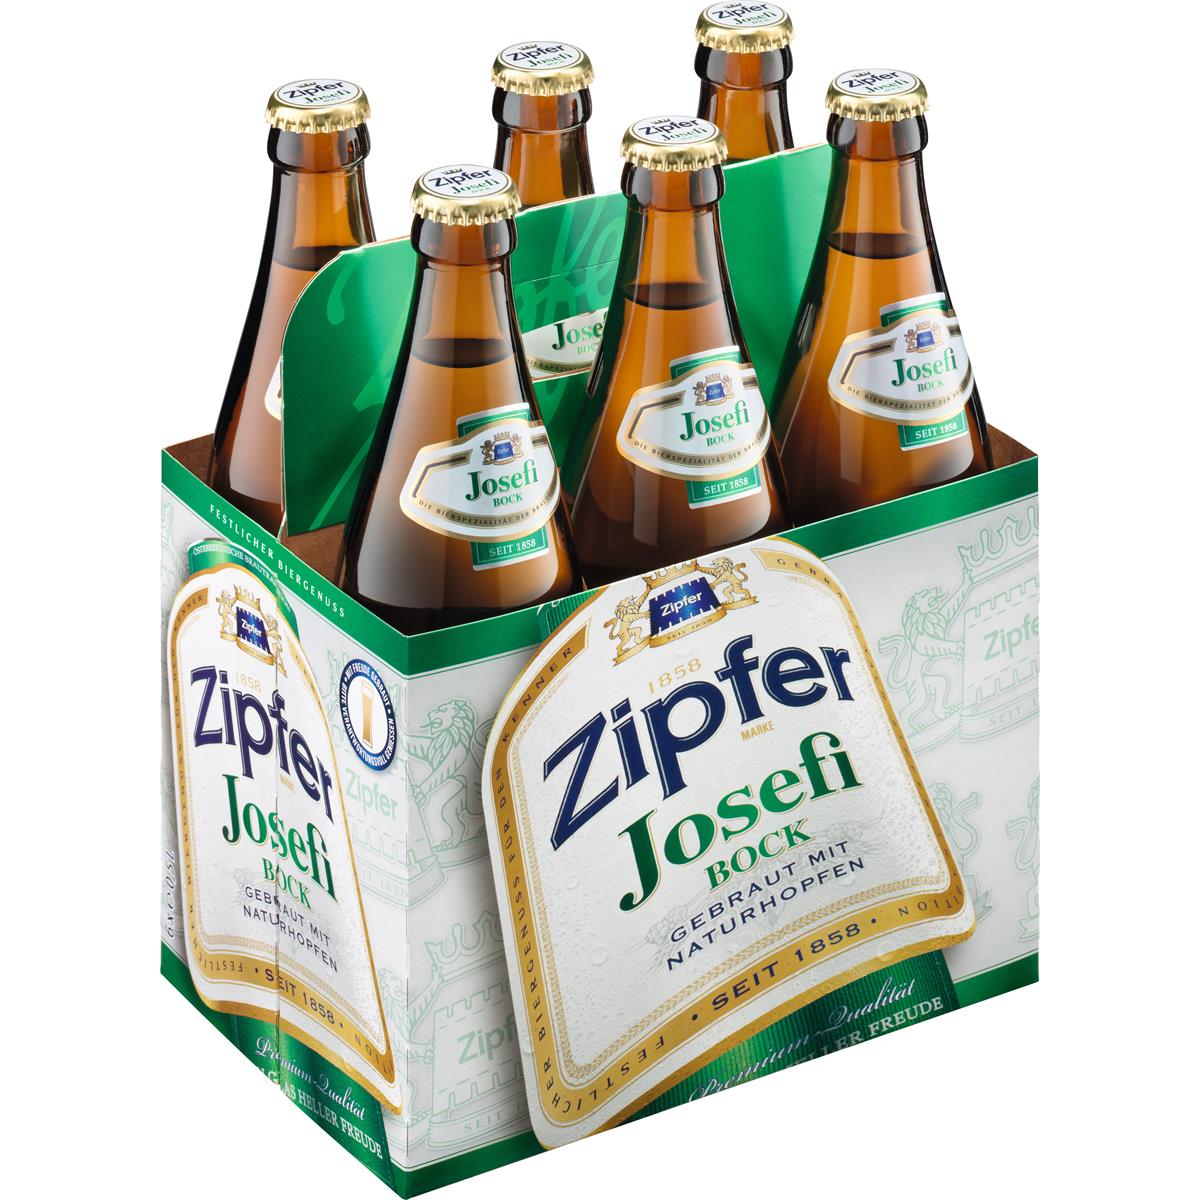 Der Zipfer Josefibock ist während der Osterzeit in der 0,5l Flasche erhältlich.